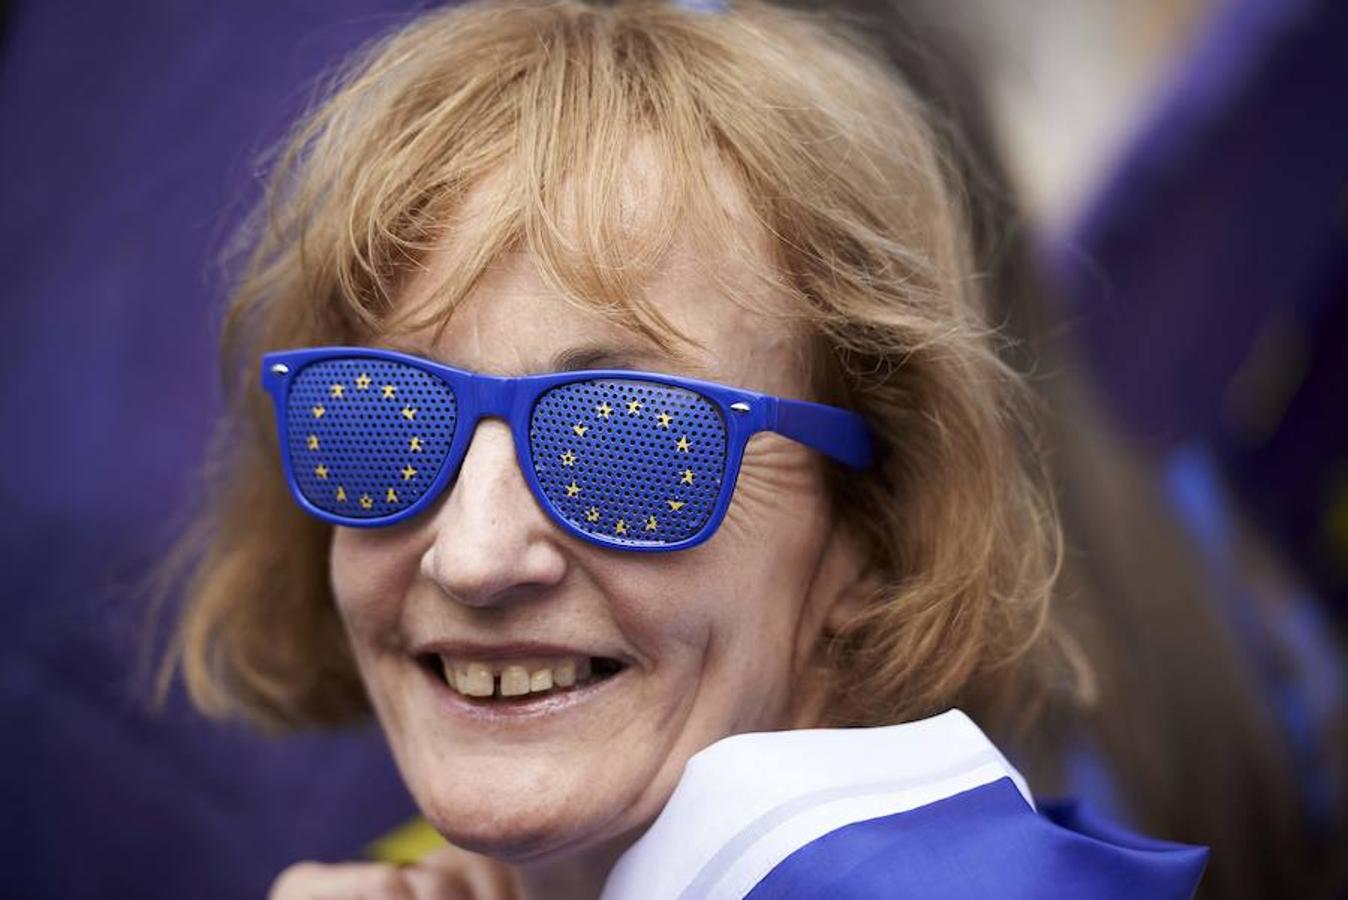 Manifestación anti-Brexit. Un manifestante usa gafas con la bandera de la UE durante la Marcha Popular para exigir una votación popular sobre el acuerdo final Brexit